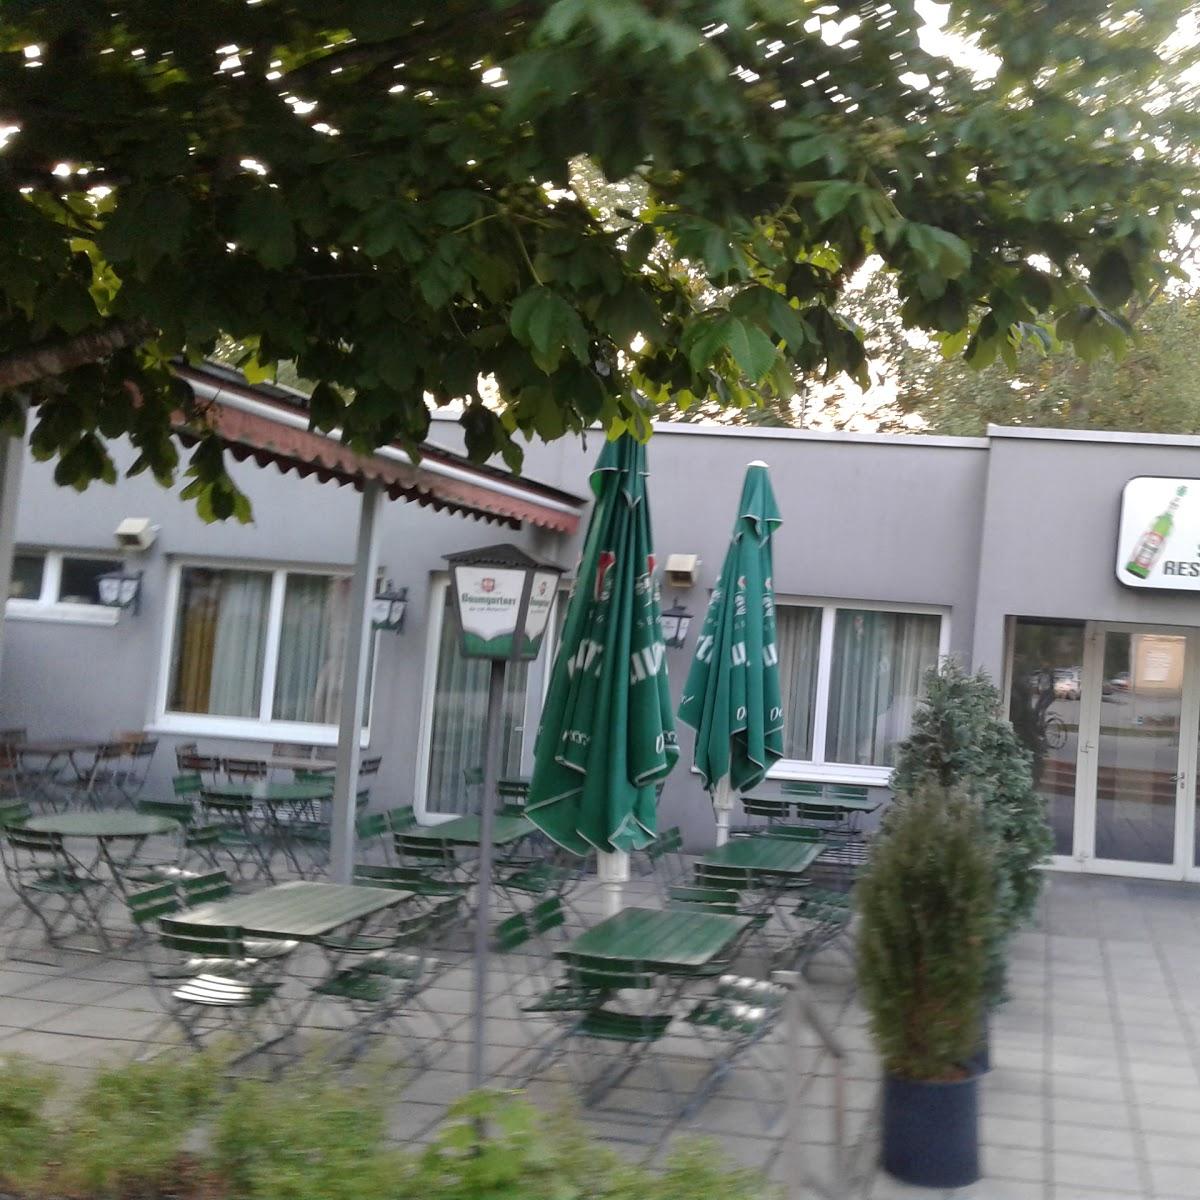 Restaurant "Baunti Sportrestaurant" in Linz